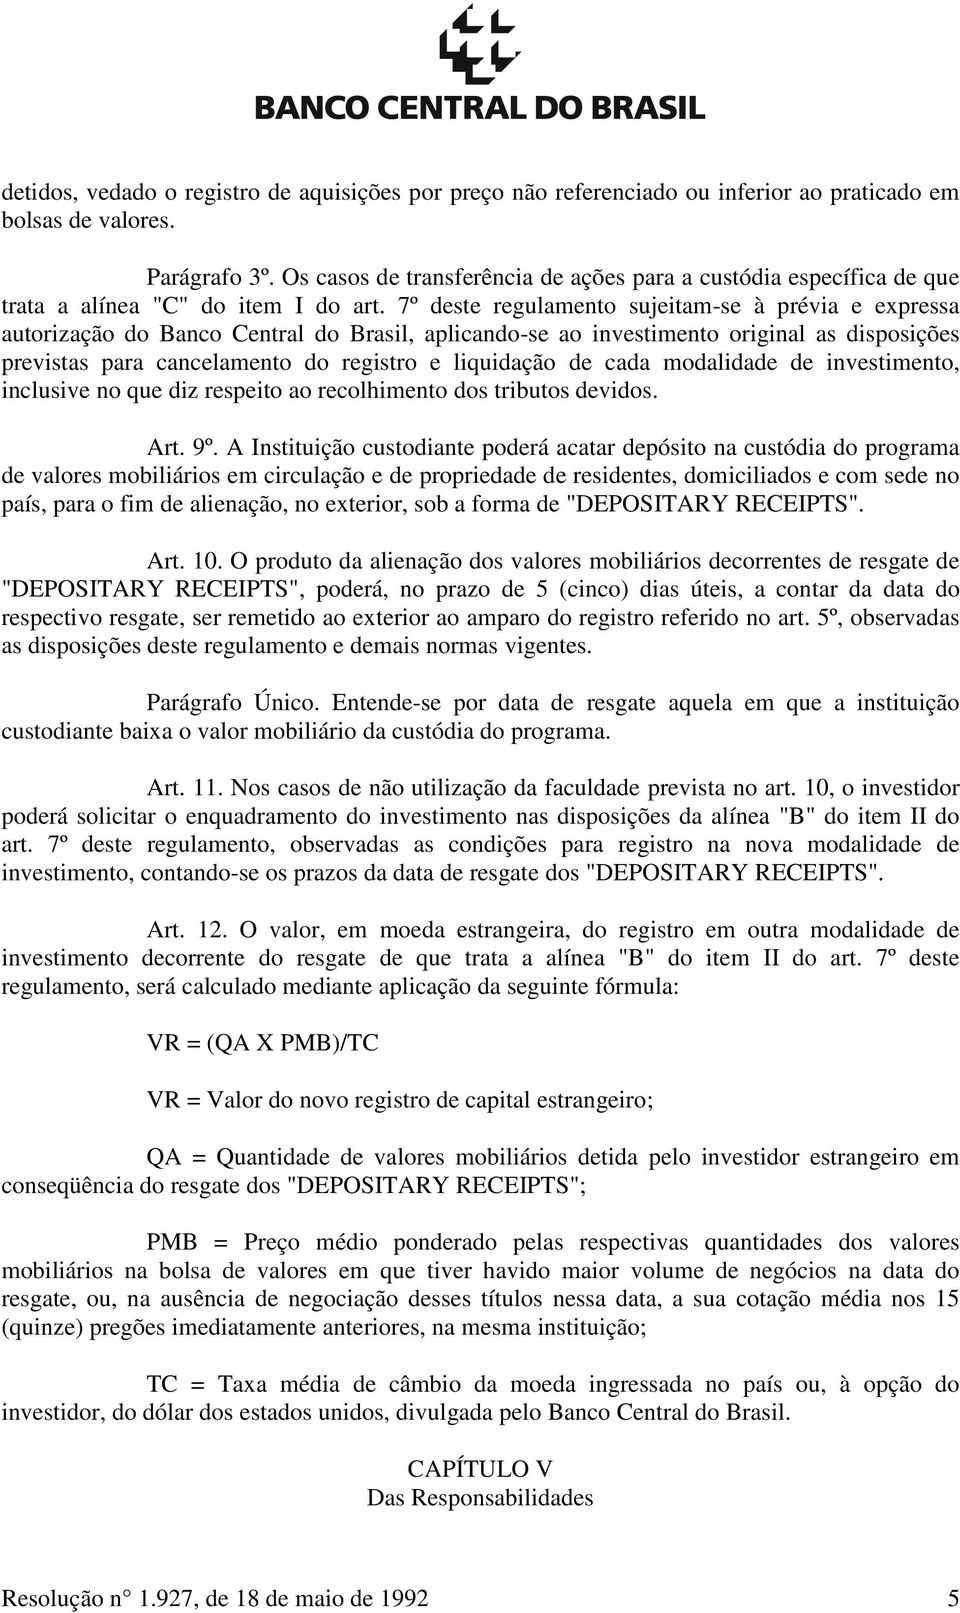 7º deste regulamento sujeitam-se à prévia e expressa autorização do Banco Central do Brasil, aplicando-se ao investimento original as disposições previstas para cancelamento do registro e liquidação